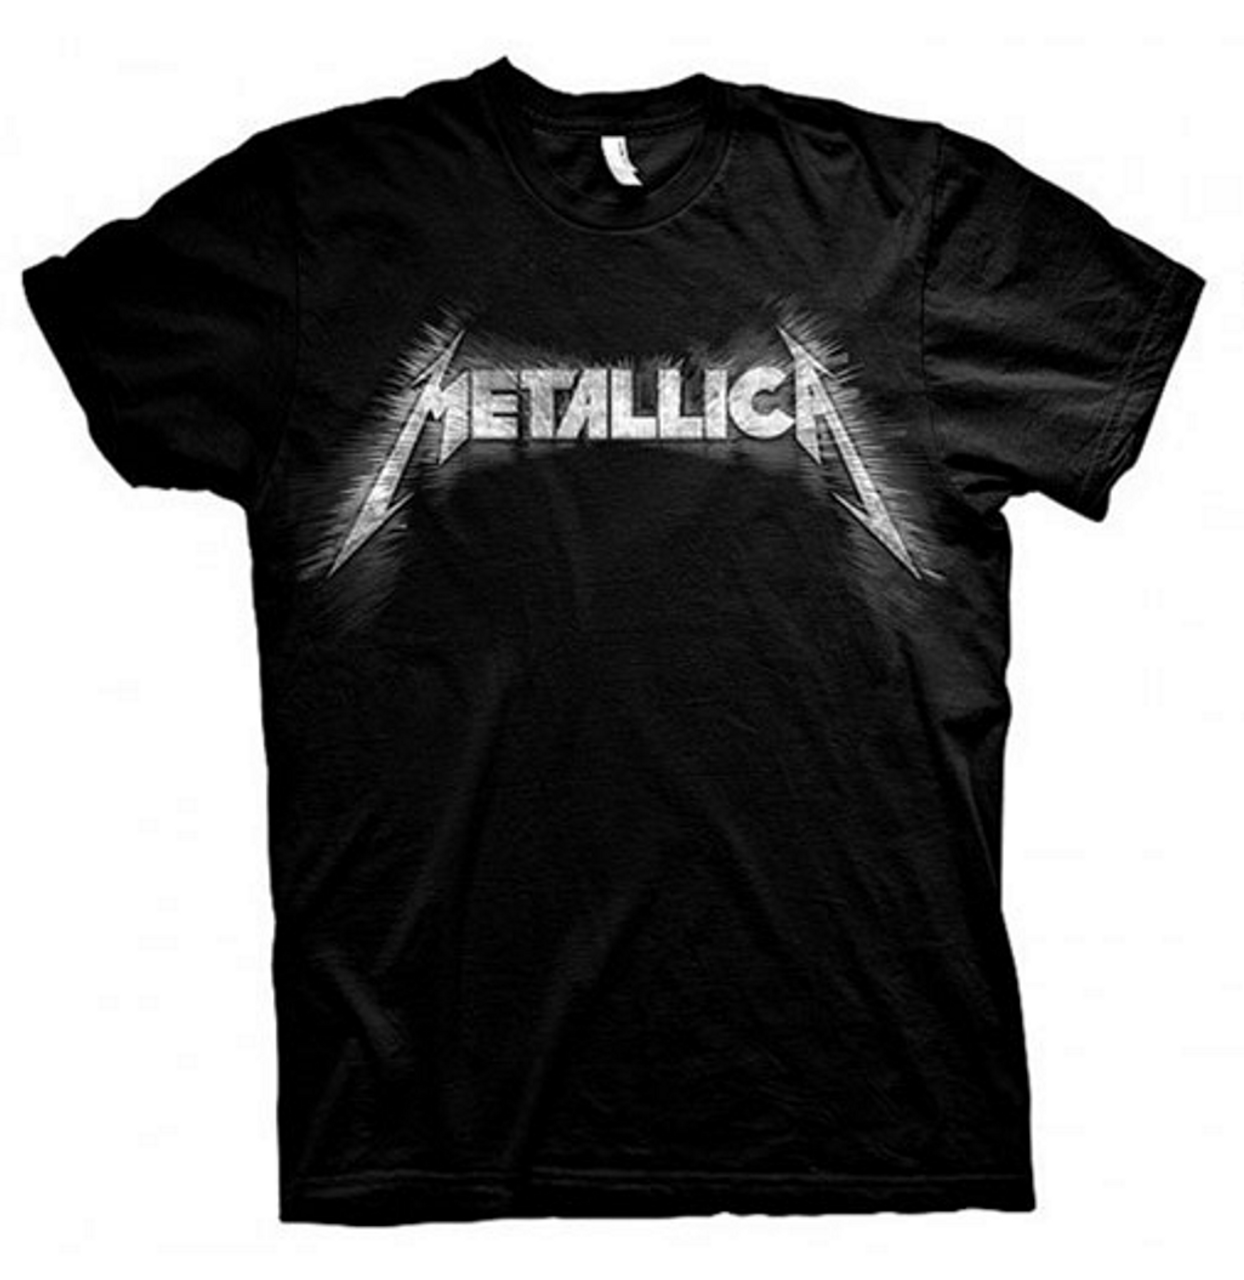 Metallica 'Spiked' (Black) T-Shirt